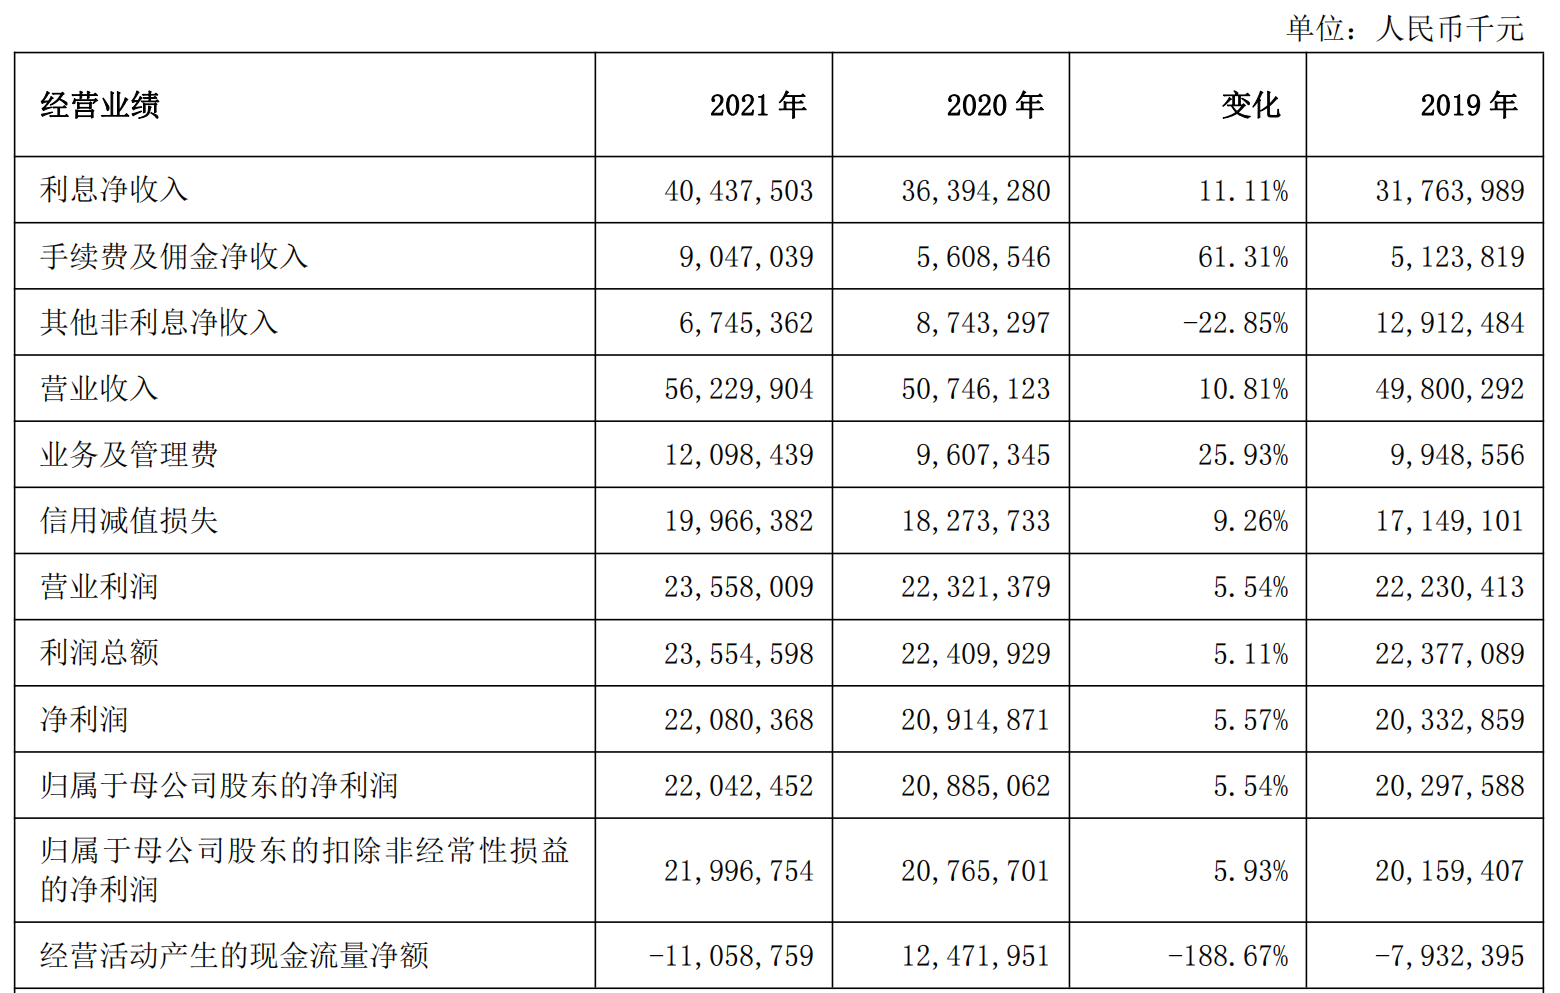 上海銀行2021年集團資產總額2.65萬億元 實現利息凈收入404.38億元